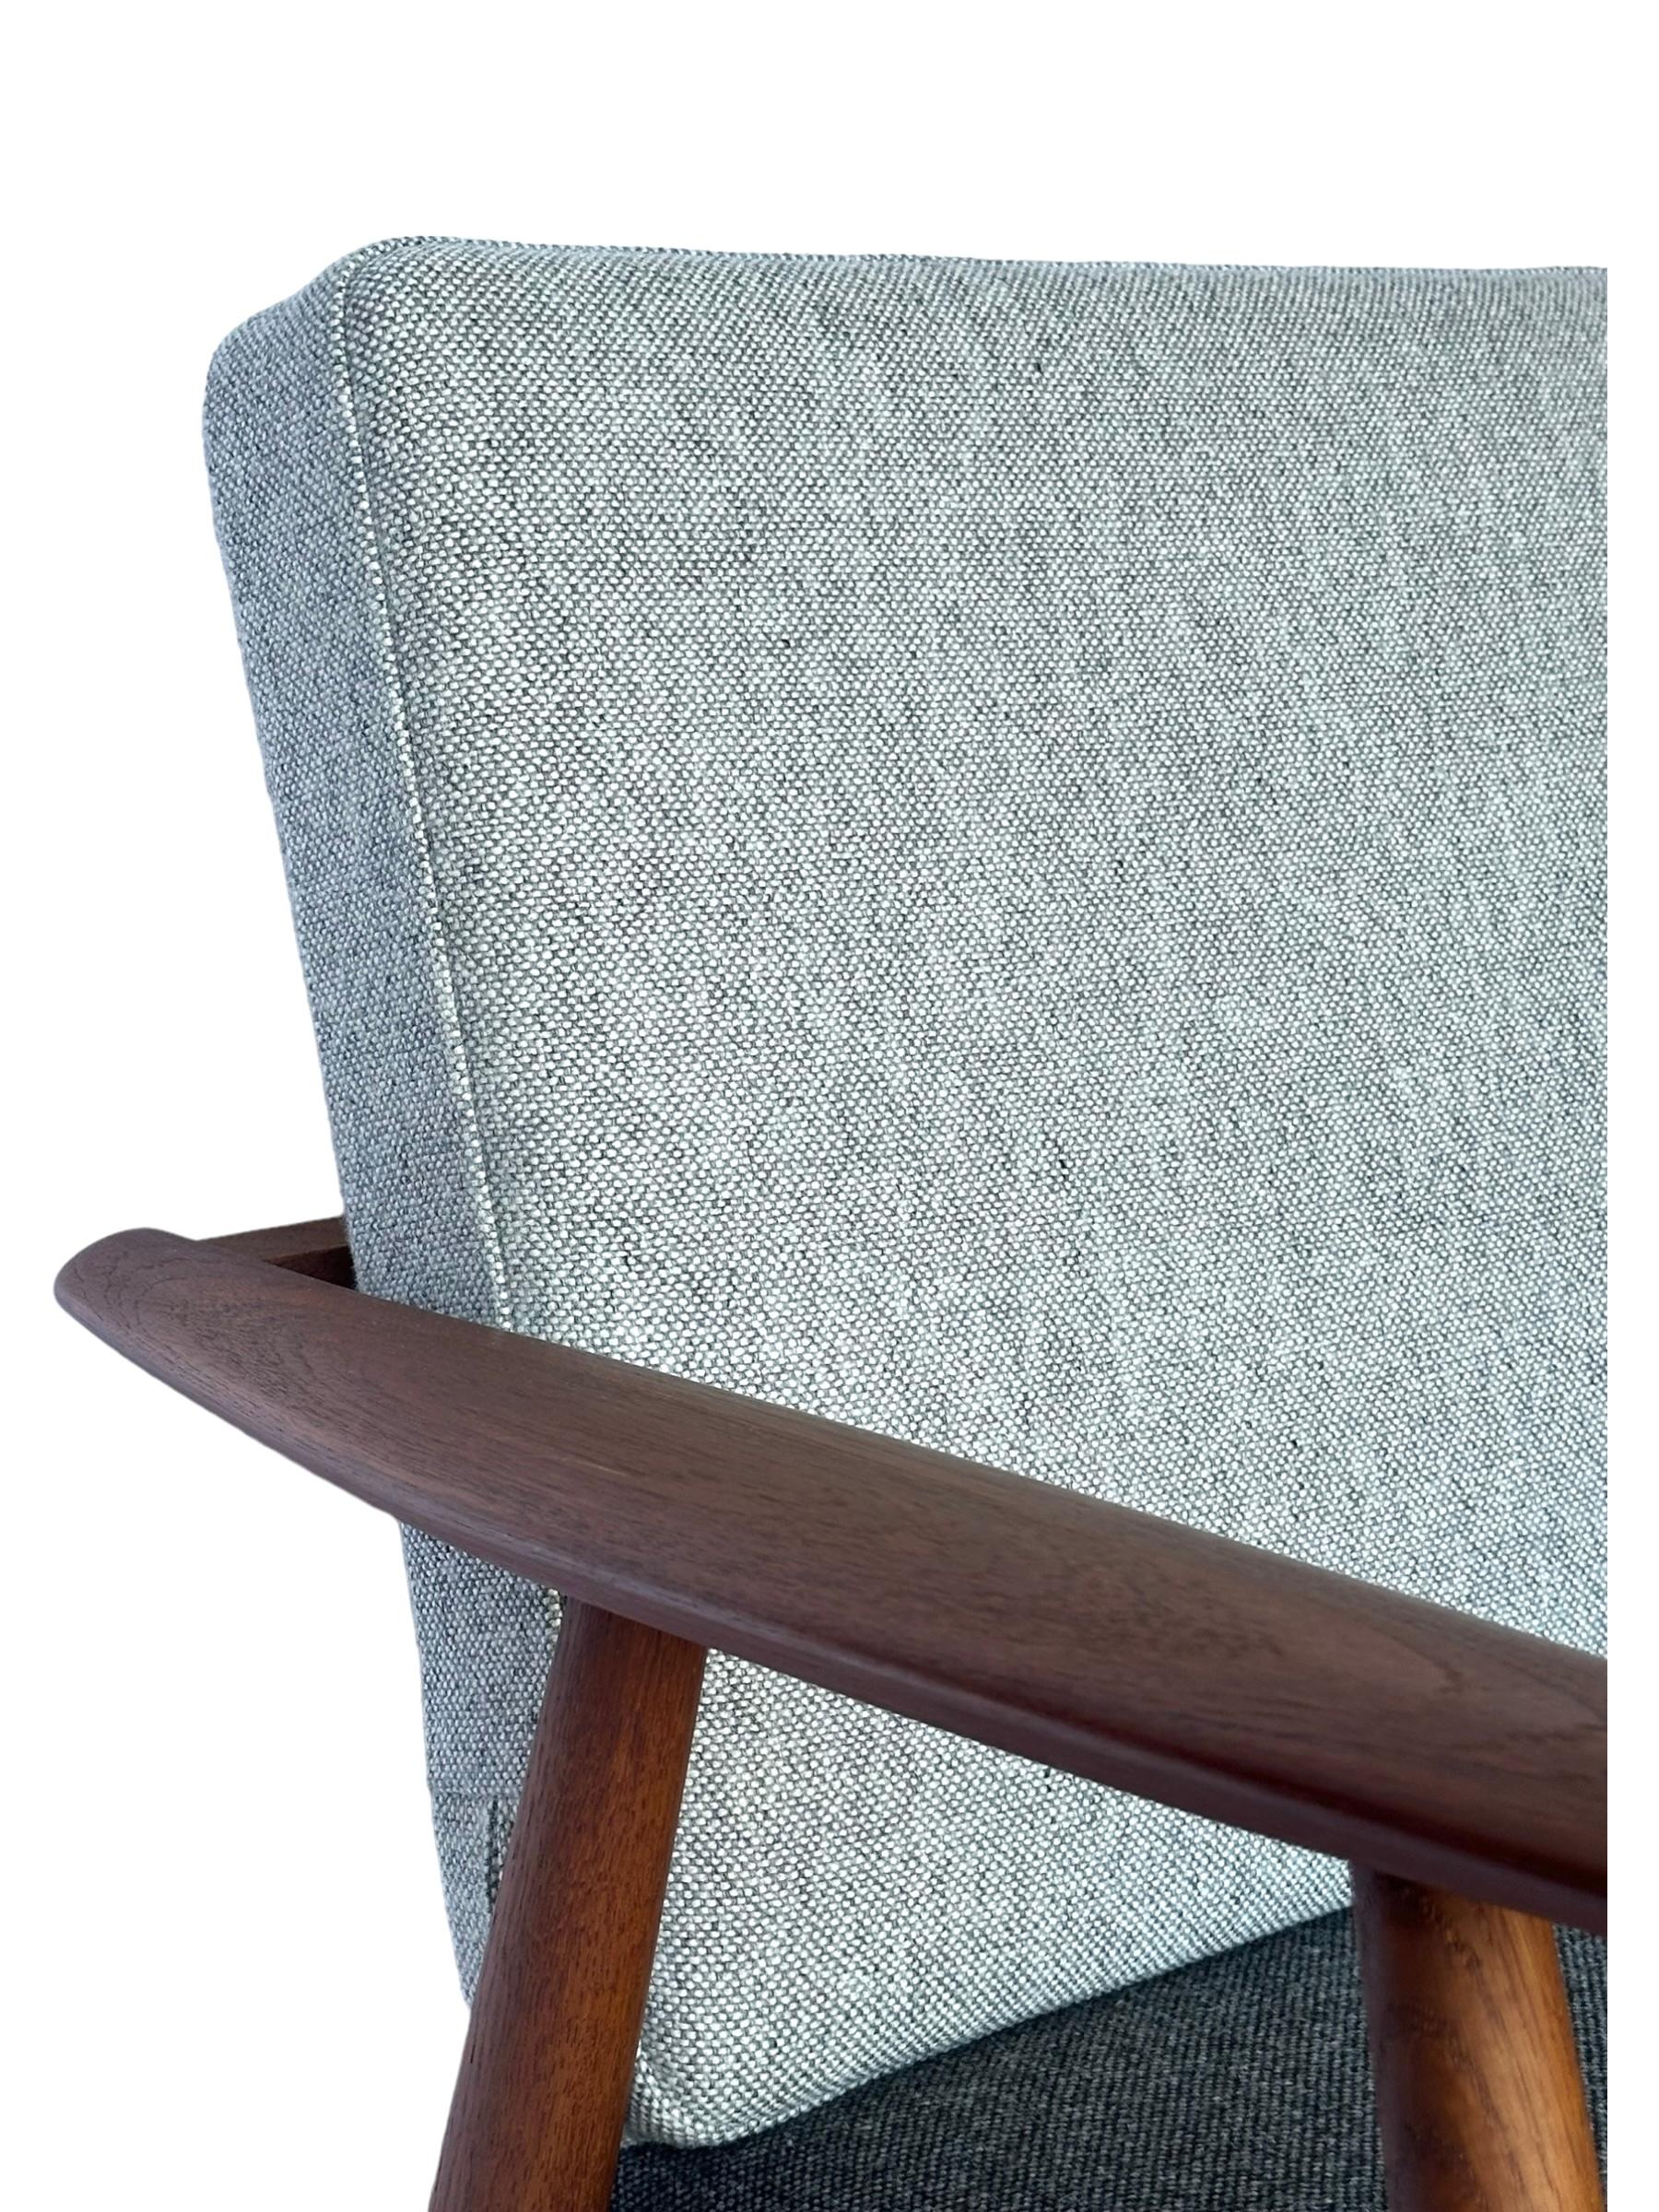 Hans J. Wegner for Getama Signed Sofa with new Mataram Upholstery For Sale 1